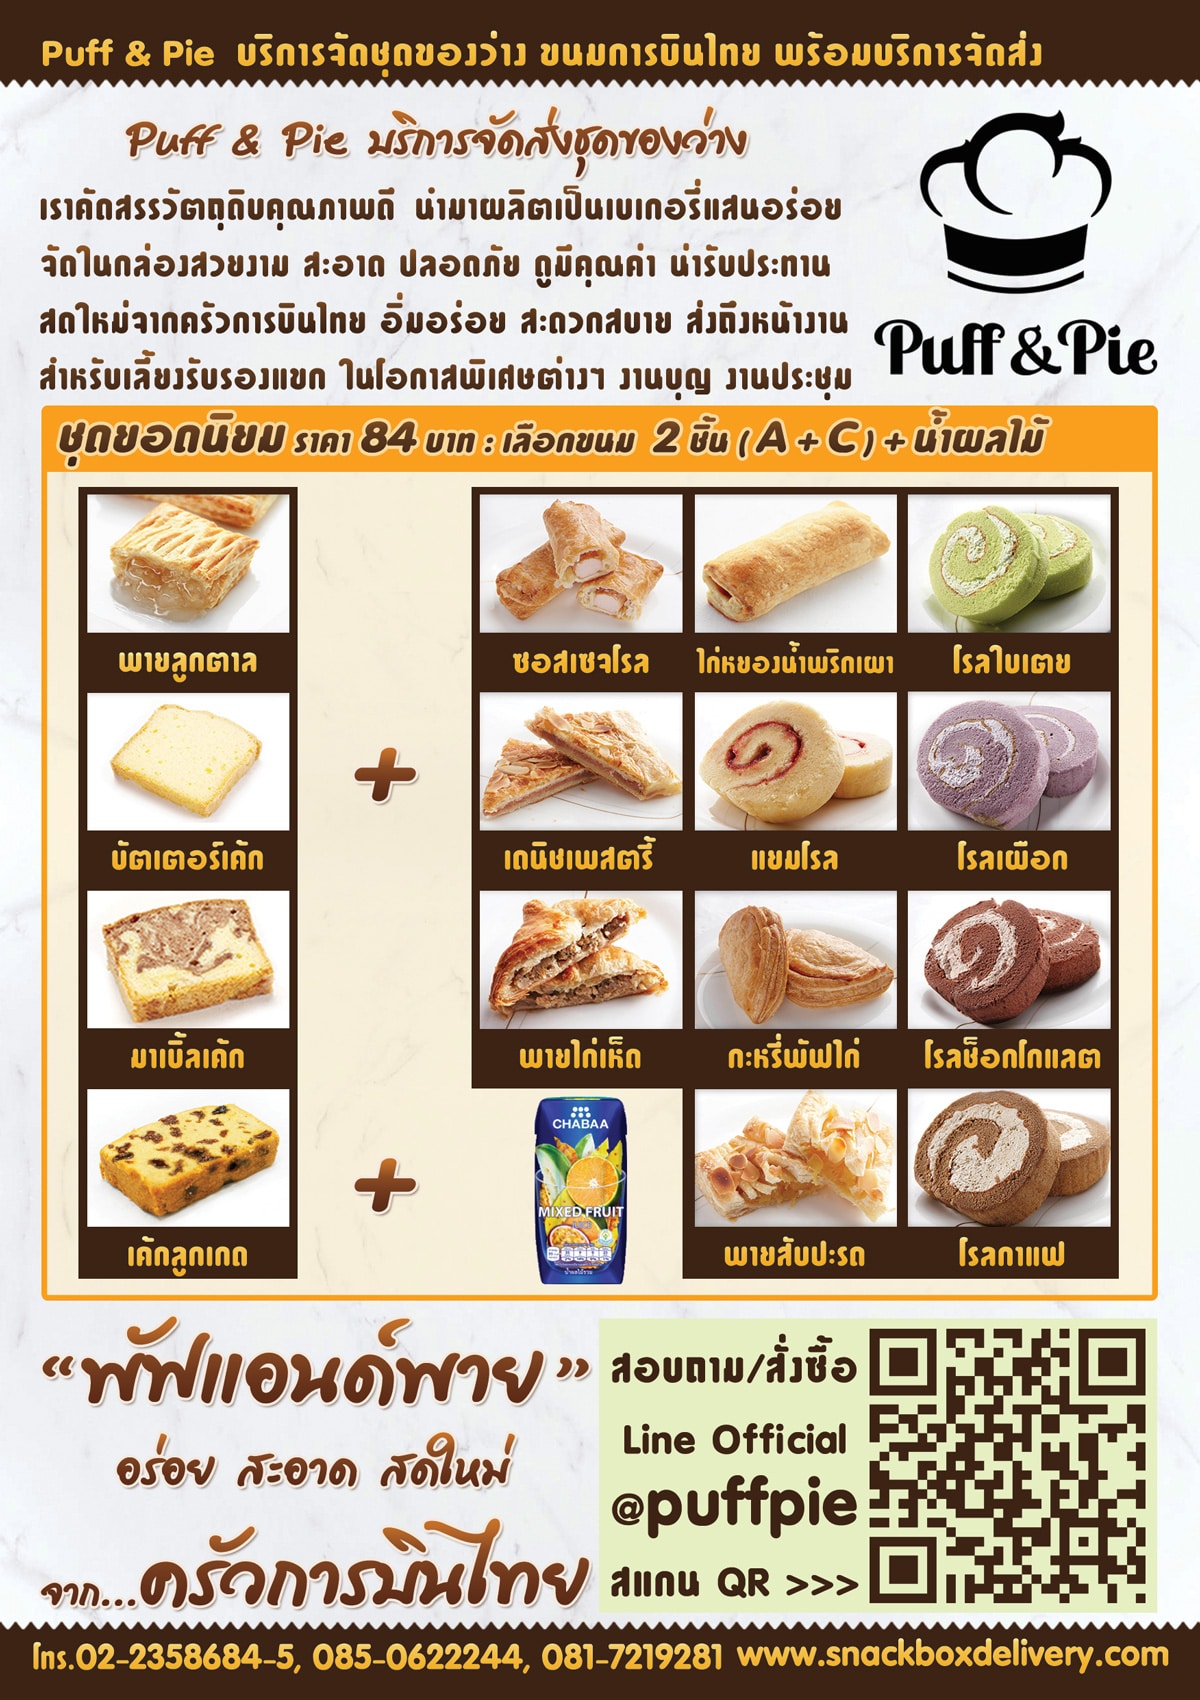 Puff & Pie Snack Box - Recommended Menu - ชุดอาหารว่างยอดนิยม พัฟแอนด์พาย การบินไทย